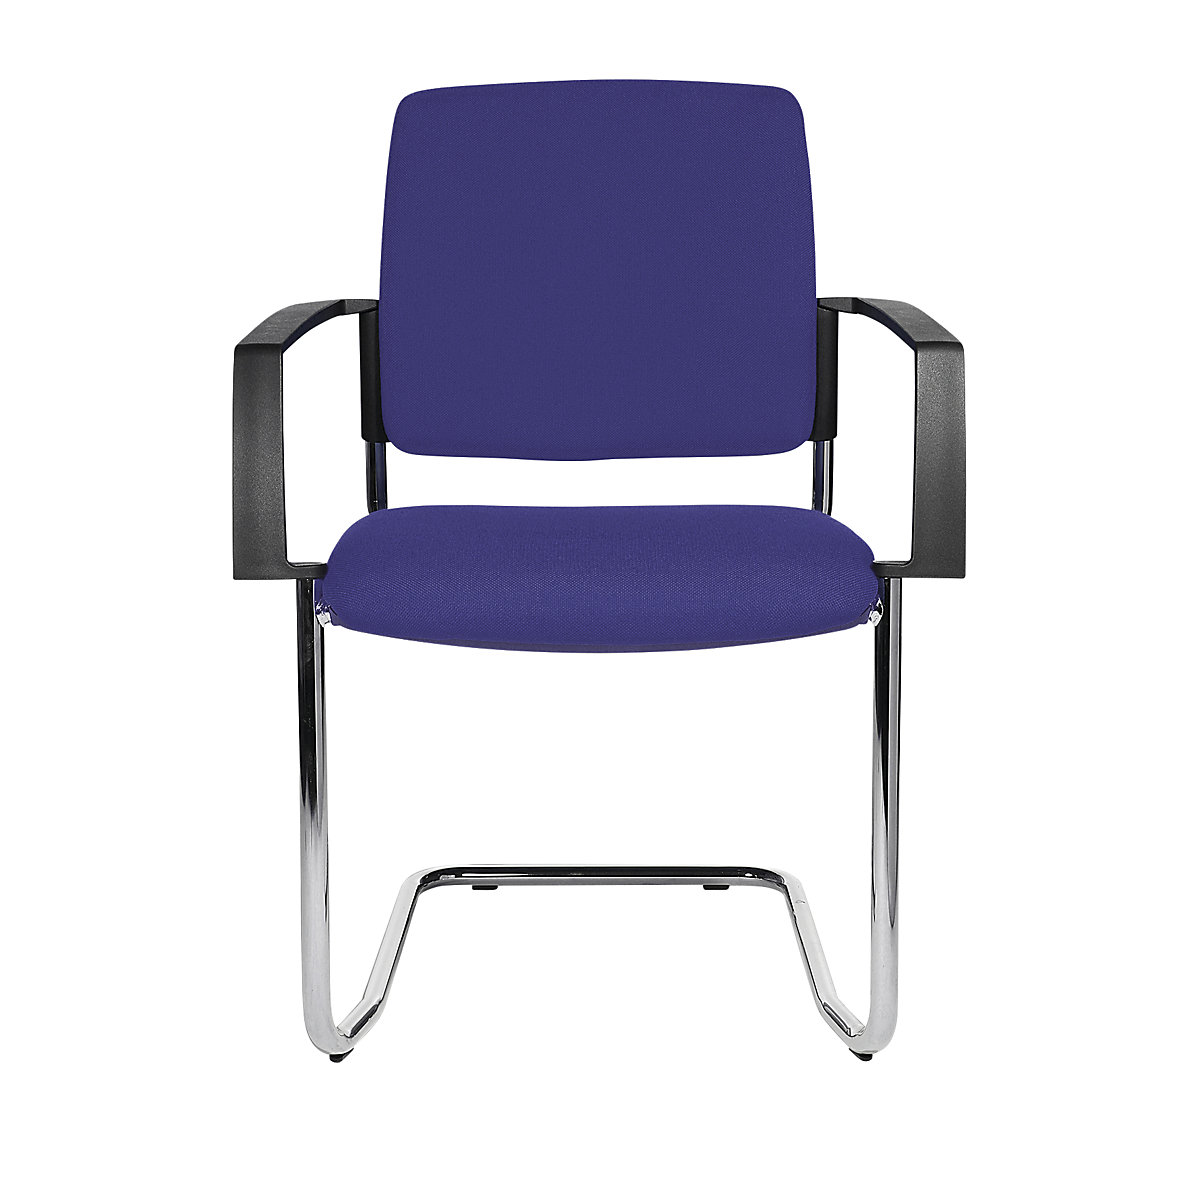 Cadeira almofadada de empilhar – Topstar, cadeira oscilante, embalagem de 2 unid., armação cromada, forro azul-1